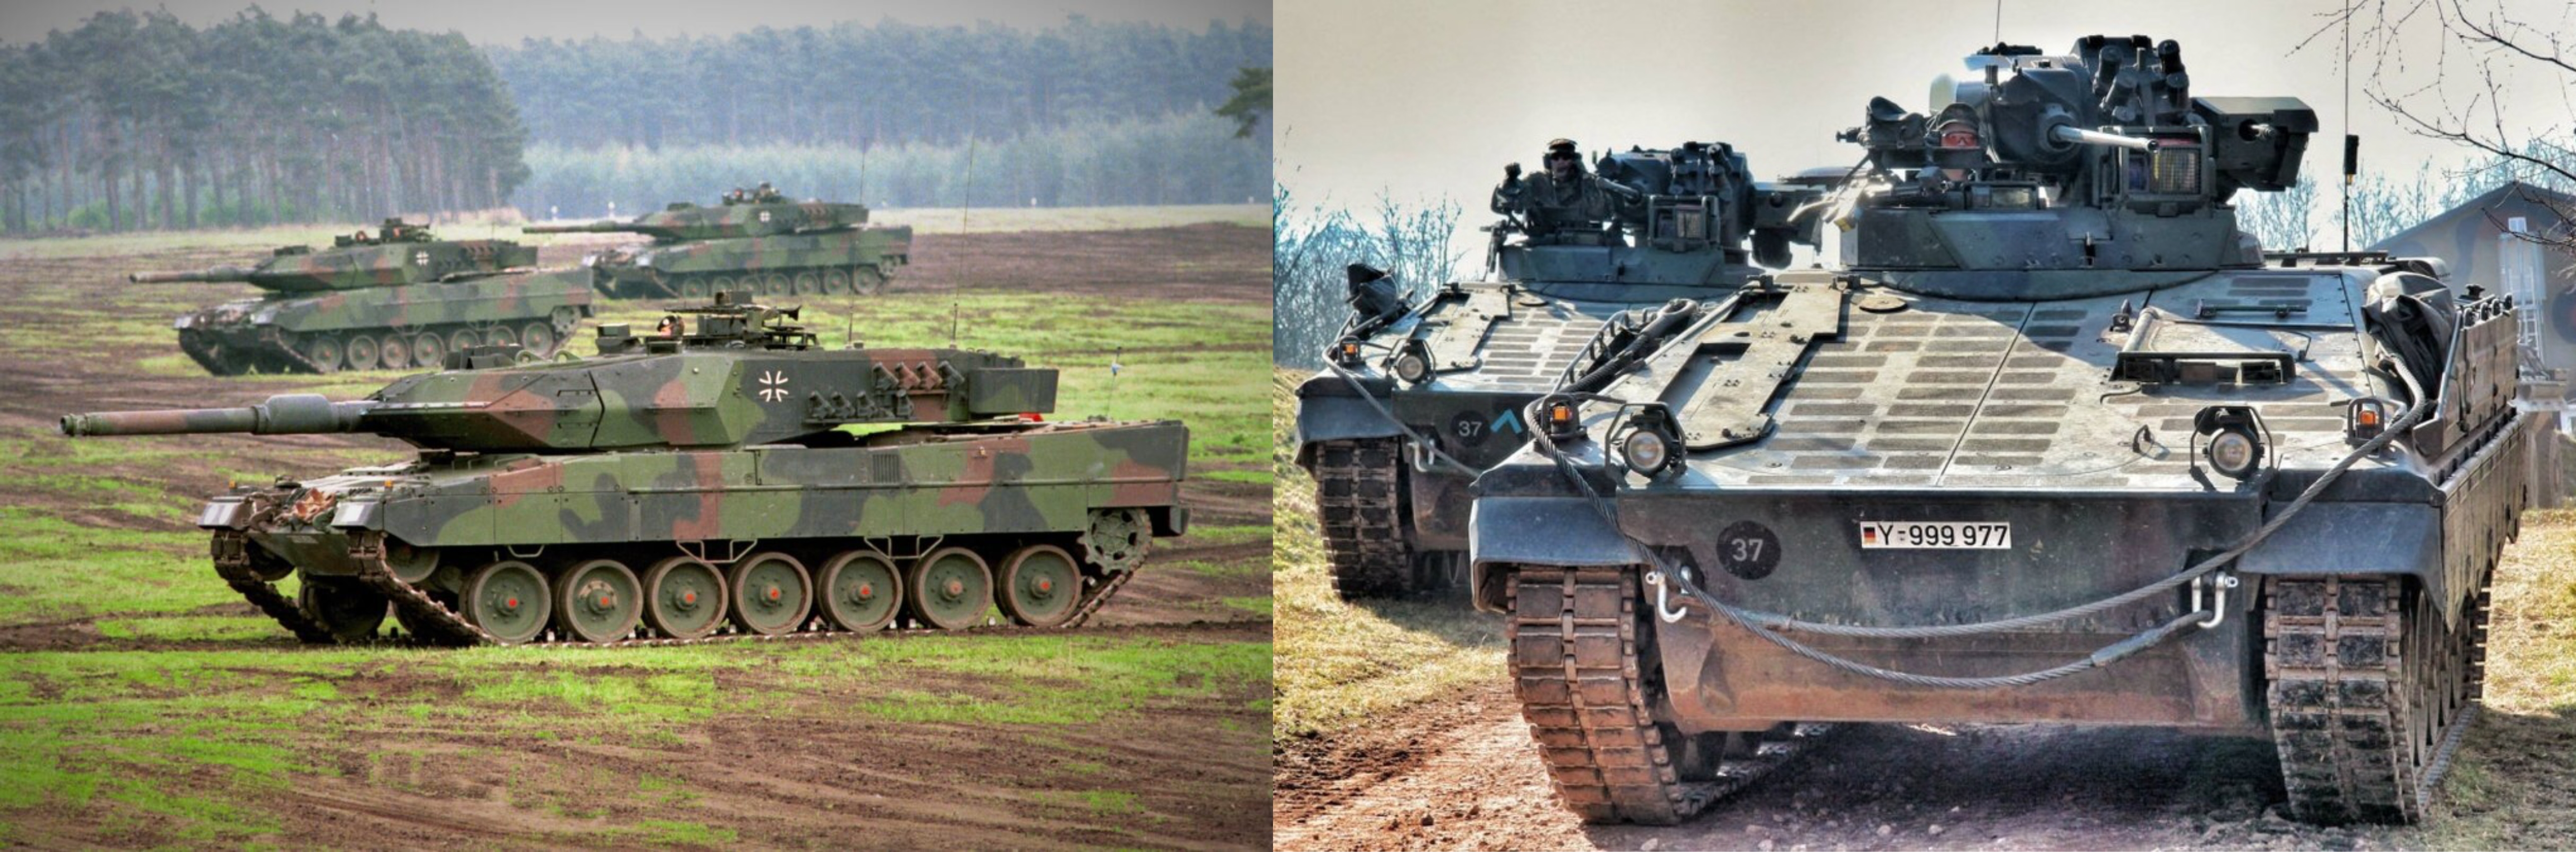 Media: Oekraïne vraagt Duitsland om meer Leopard 2 tanks en Marder infanteriegevechtsvoertuigen